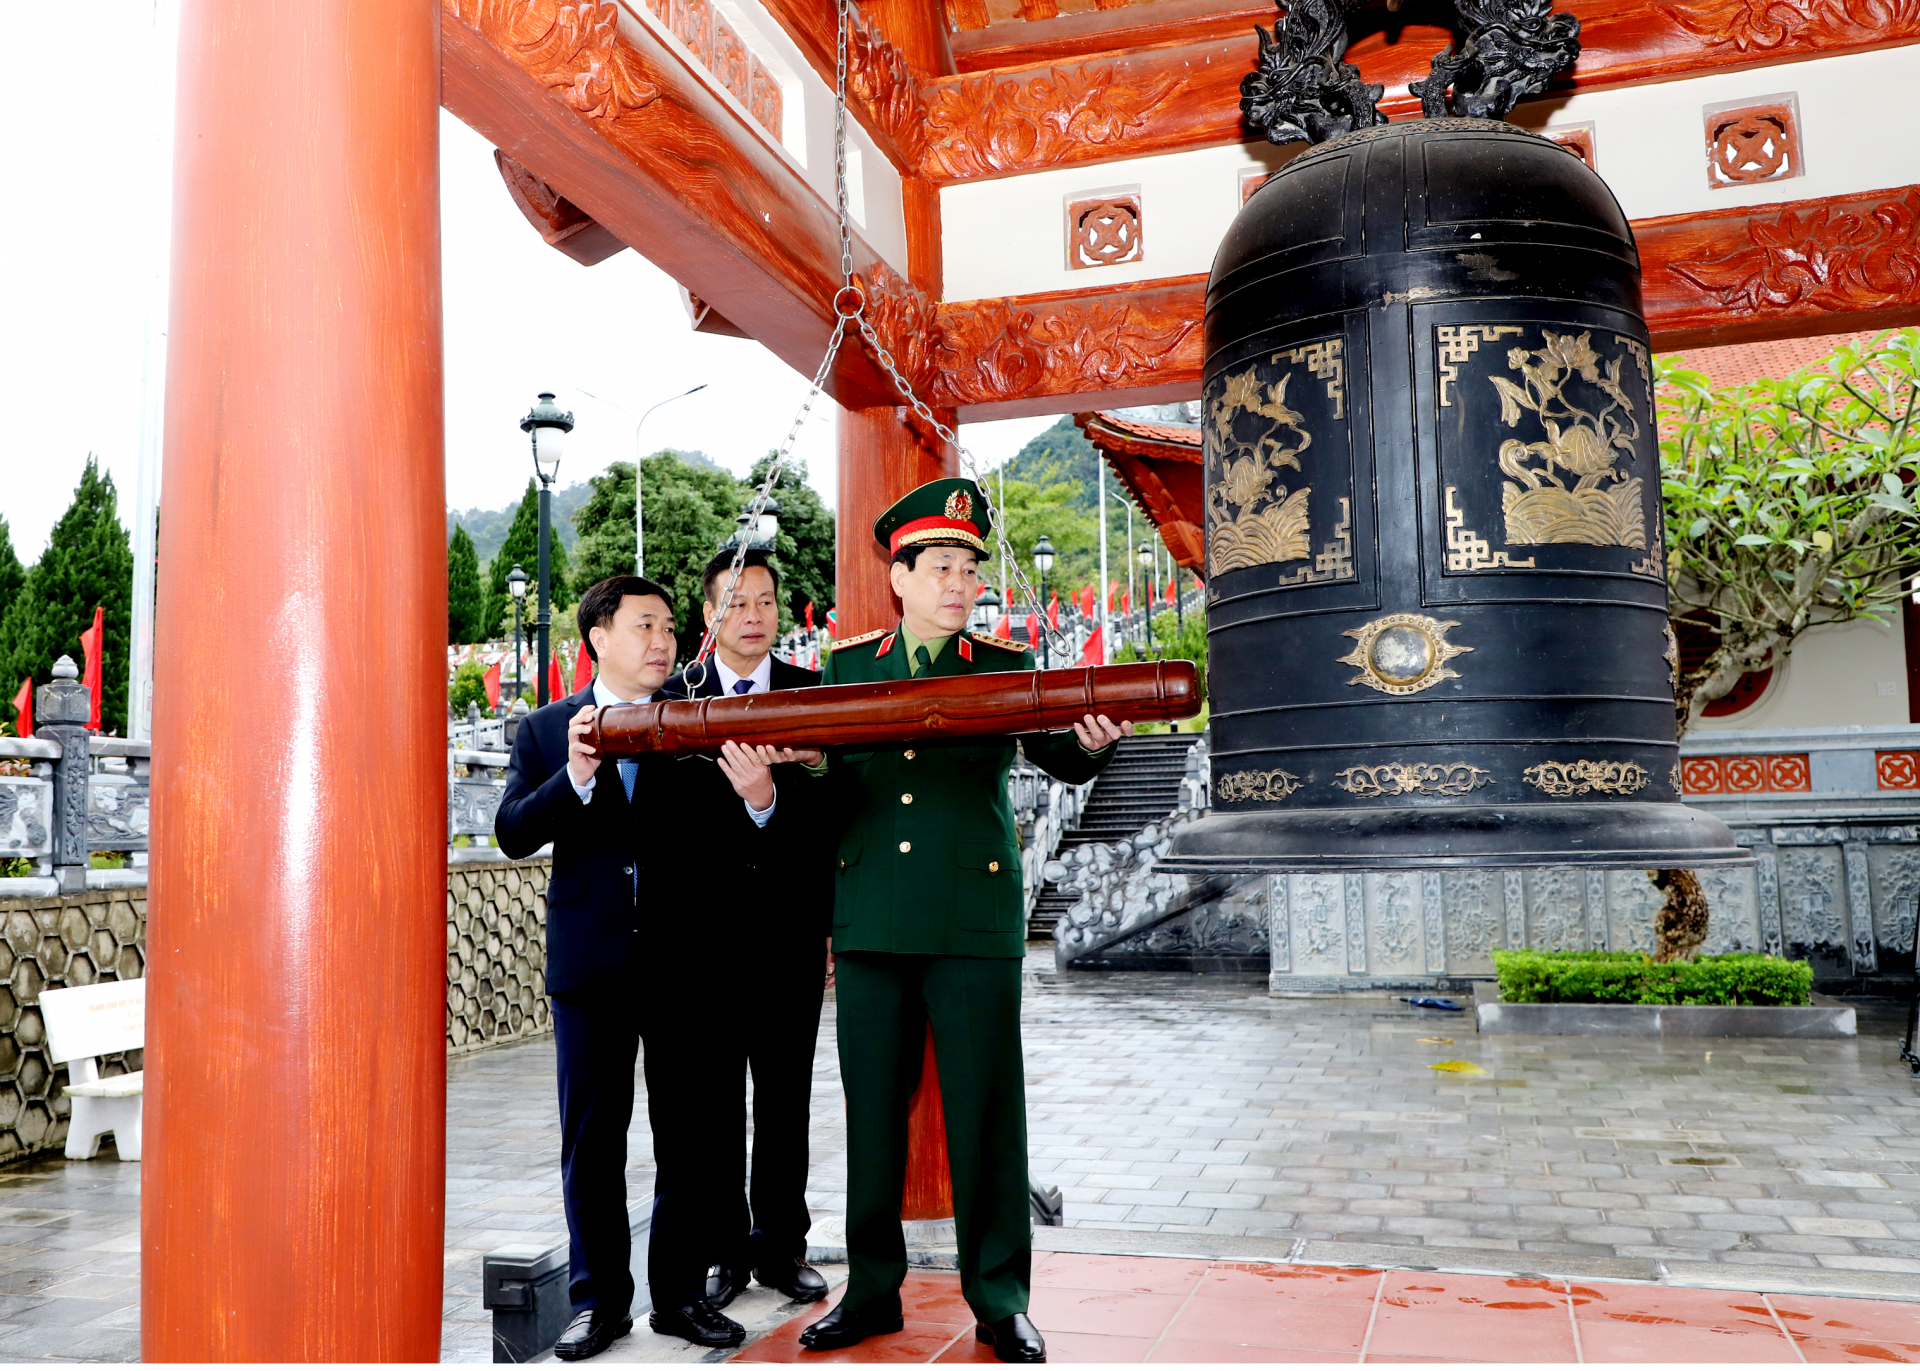 Đại tướng Lương Cường và các đồng chí Thường trực Tỉnh ủy Thỉnh chuông tại Đền thờ các Anh hùng Liệt sỹ tại Nghĩa trang Liệt sỹ Quốc gia Vị xuyên.